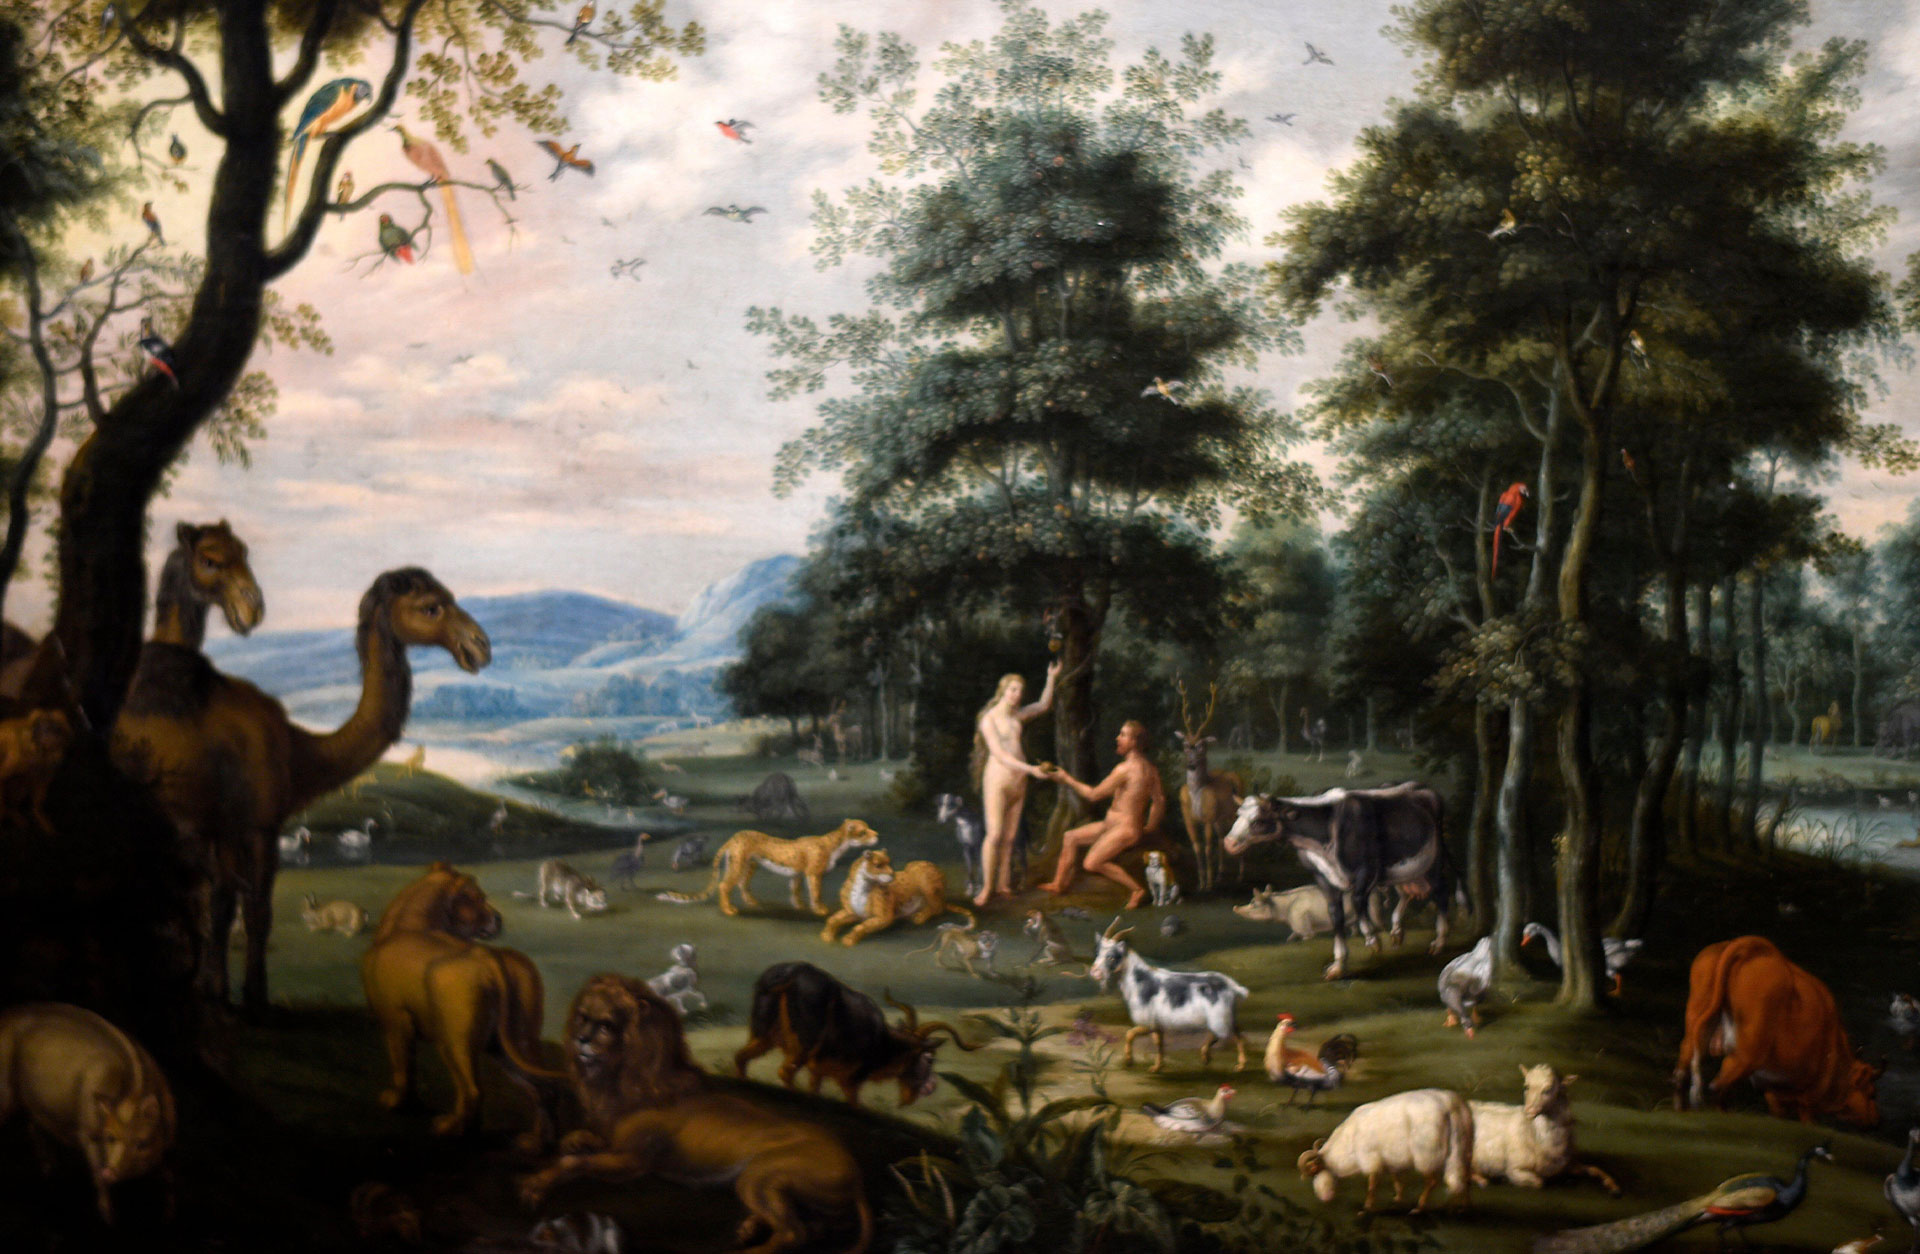 En klassisk oljemålning av skapelseberättelsen. Tavlan är fylld av olika djur: lejon, kor, får, dromedarer, hönor... som lever tillsammans med Adam och Eva i en grön och vacker värld.